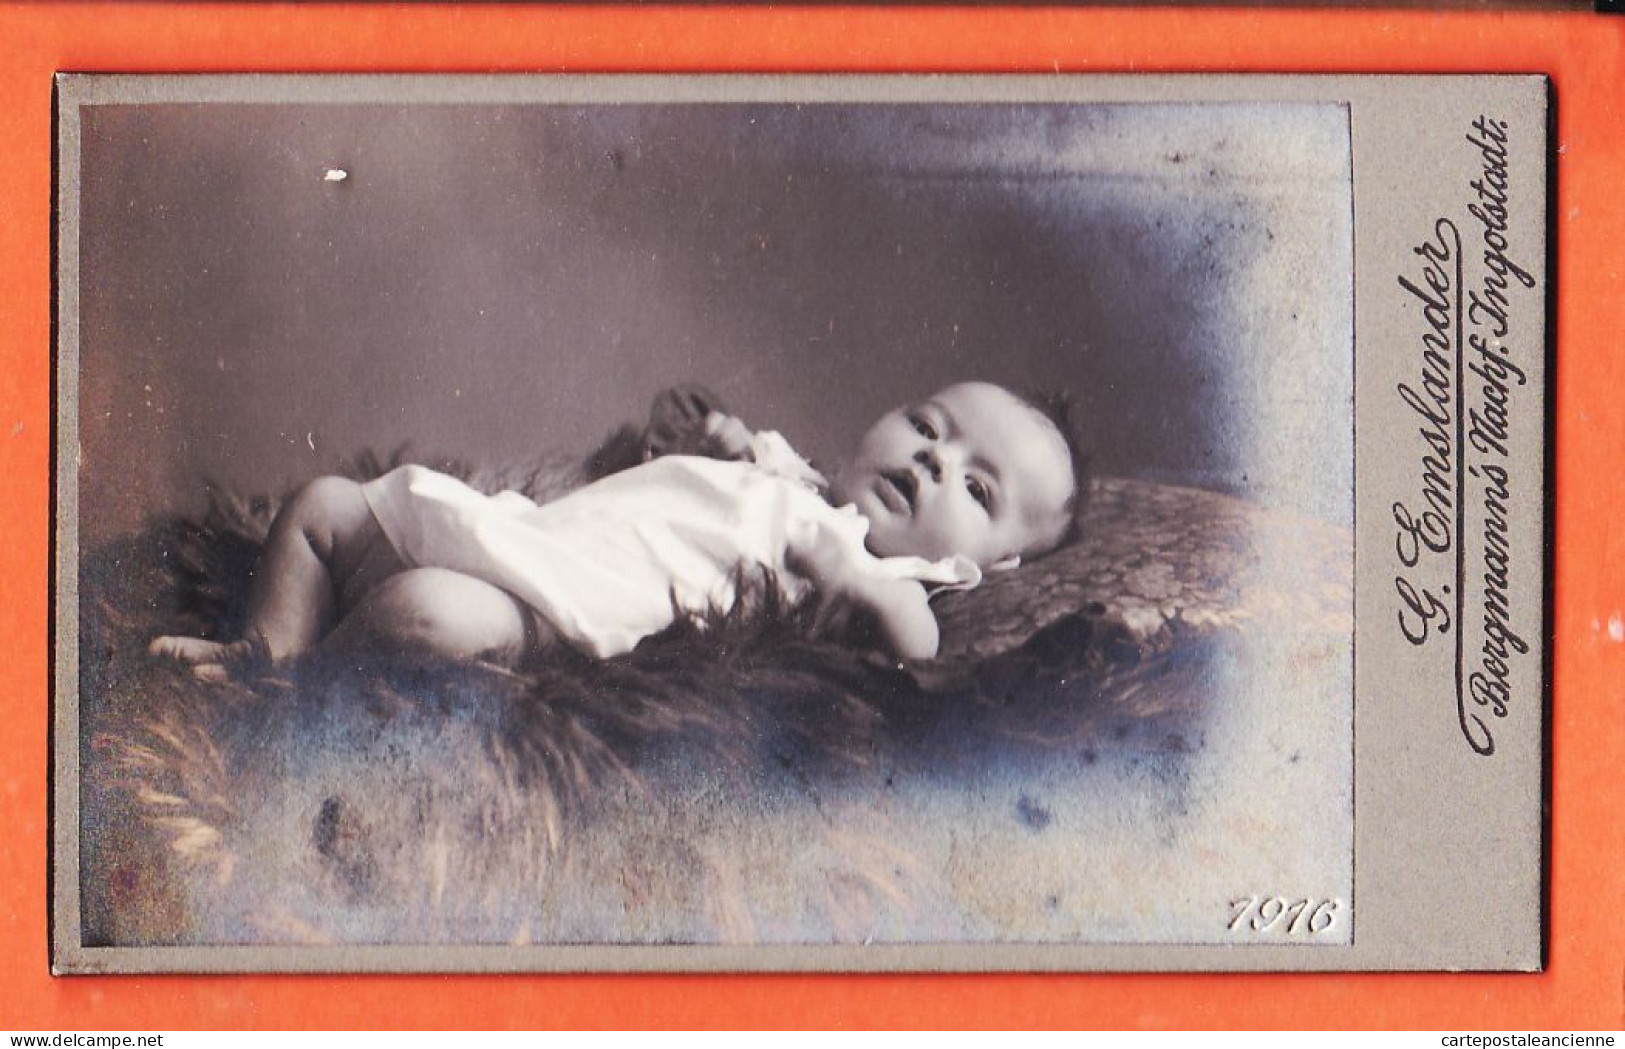 01119 / ⭐ Photo CDV INGOLSTADT Bayern ◉ Bébé Nacktes Baby Das Auf Einem Fell Liegt 1916 ◉ BERGMANN Nachf Georg EMSLANDER - Personnes Anonymes